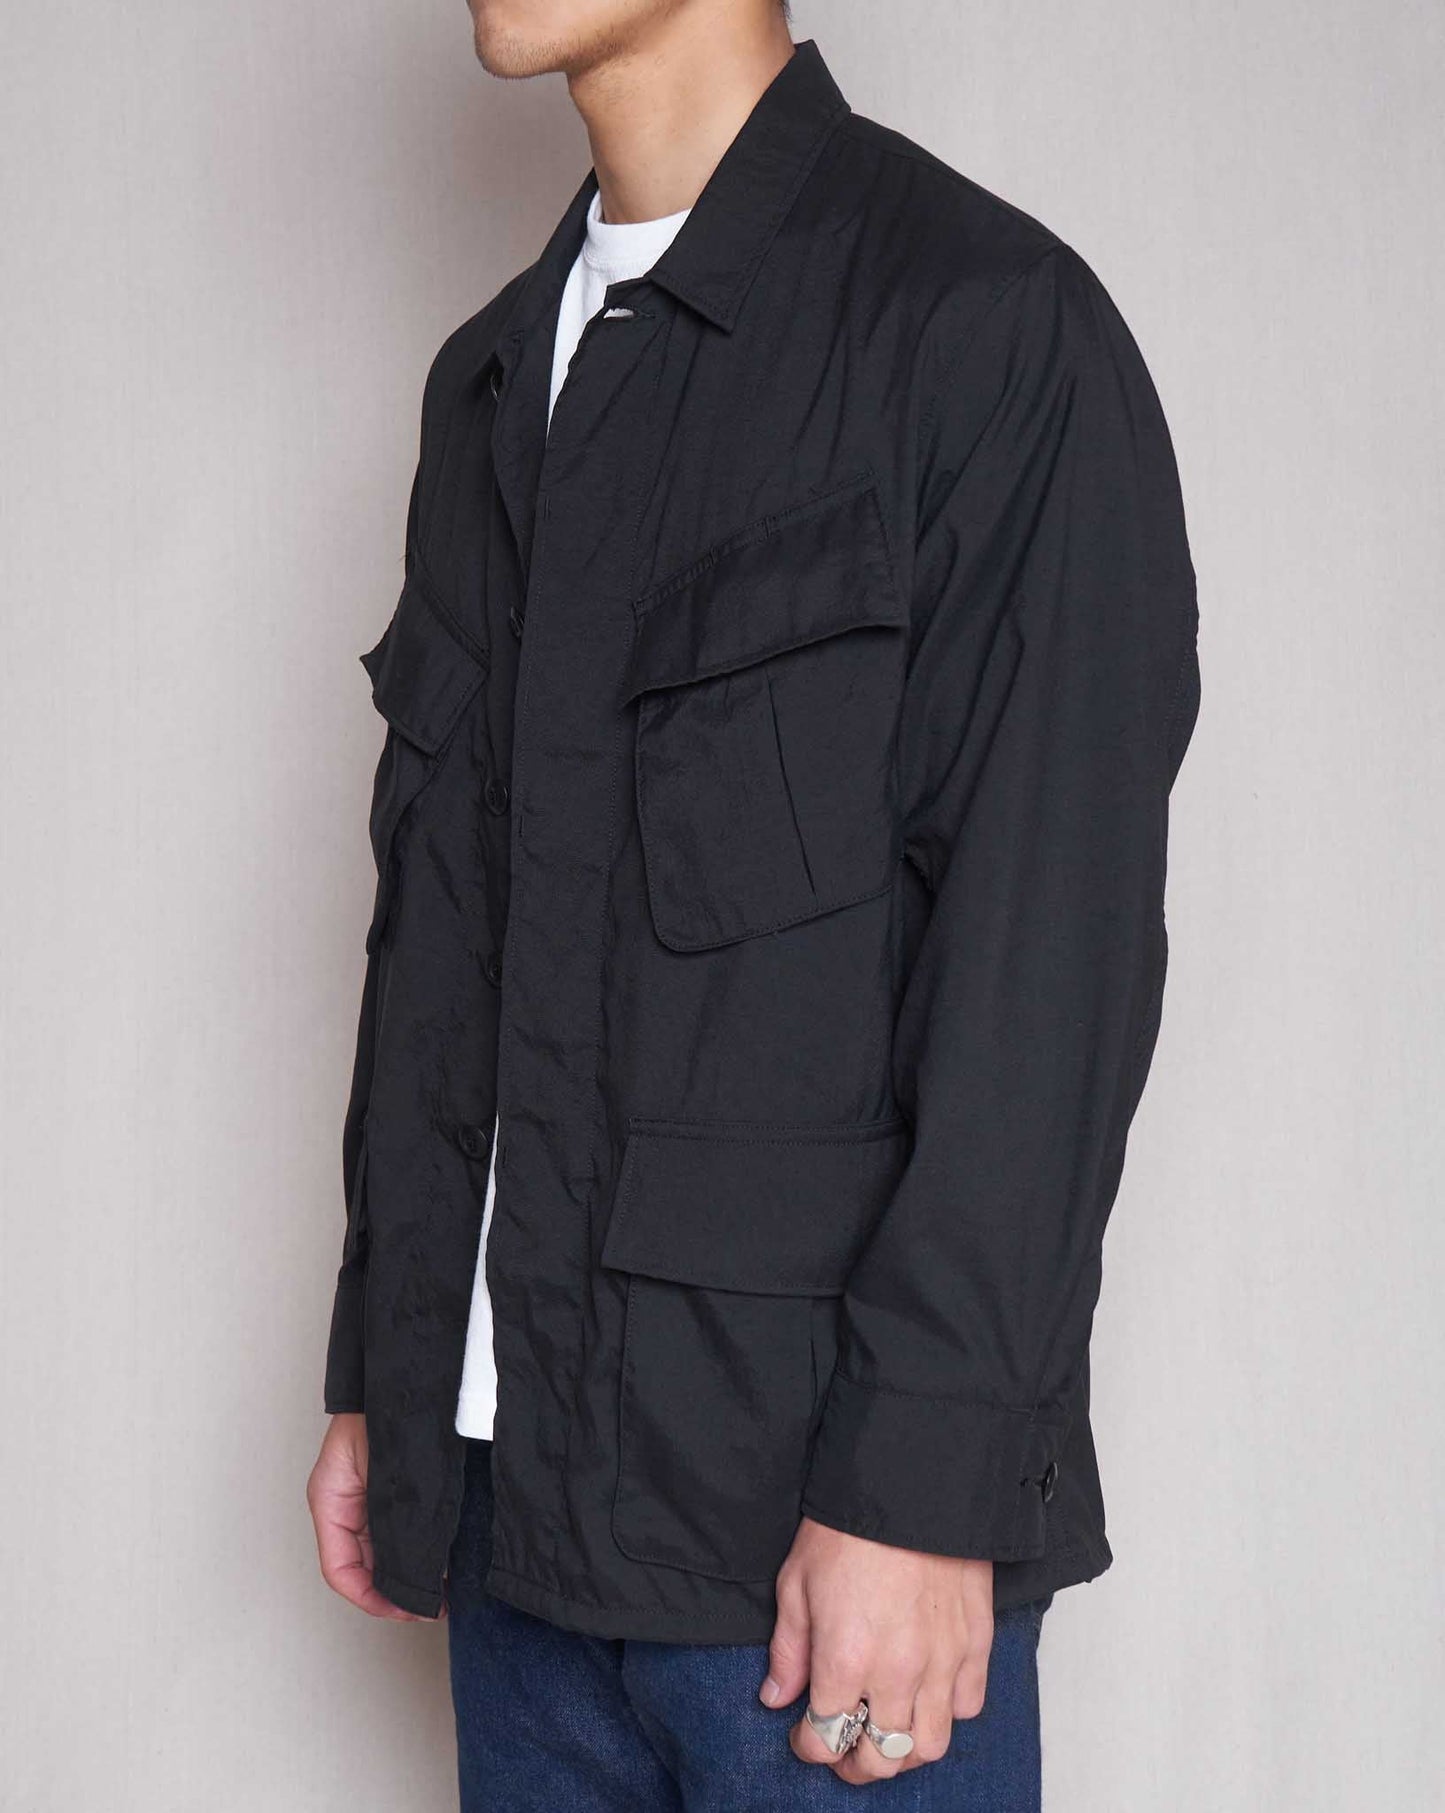 Addict Clothes ACVM Nylon Fatigue Jacket - Black -Addict Clothes - URAHARA